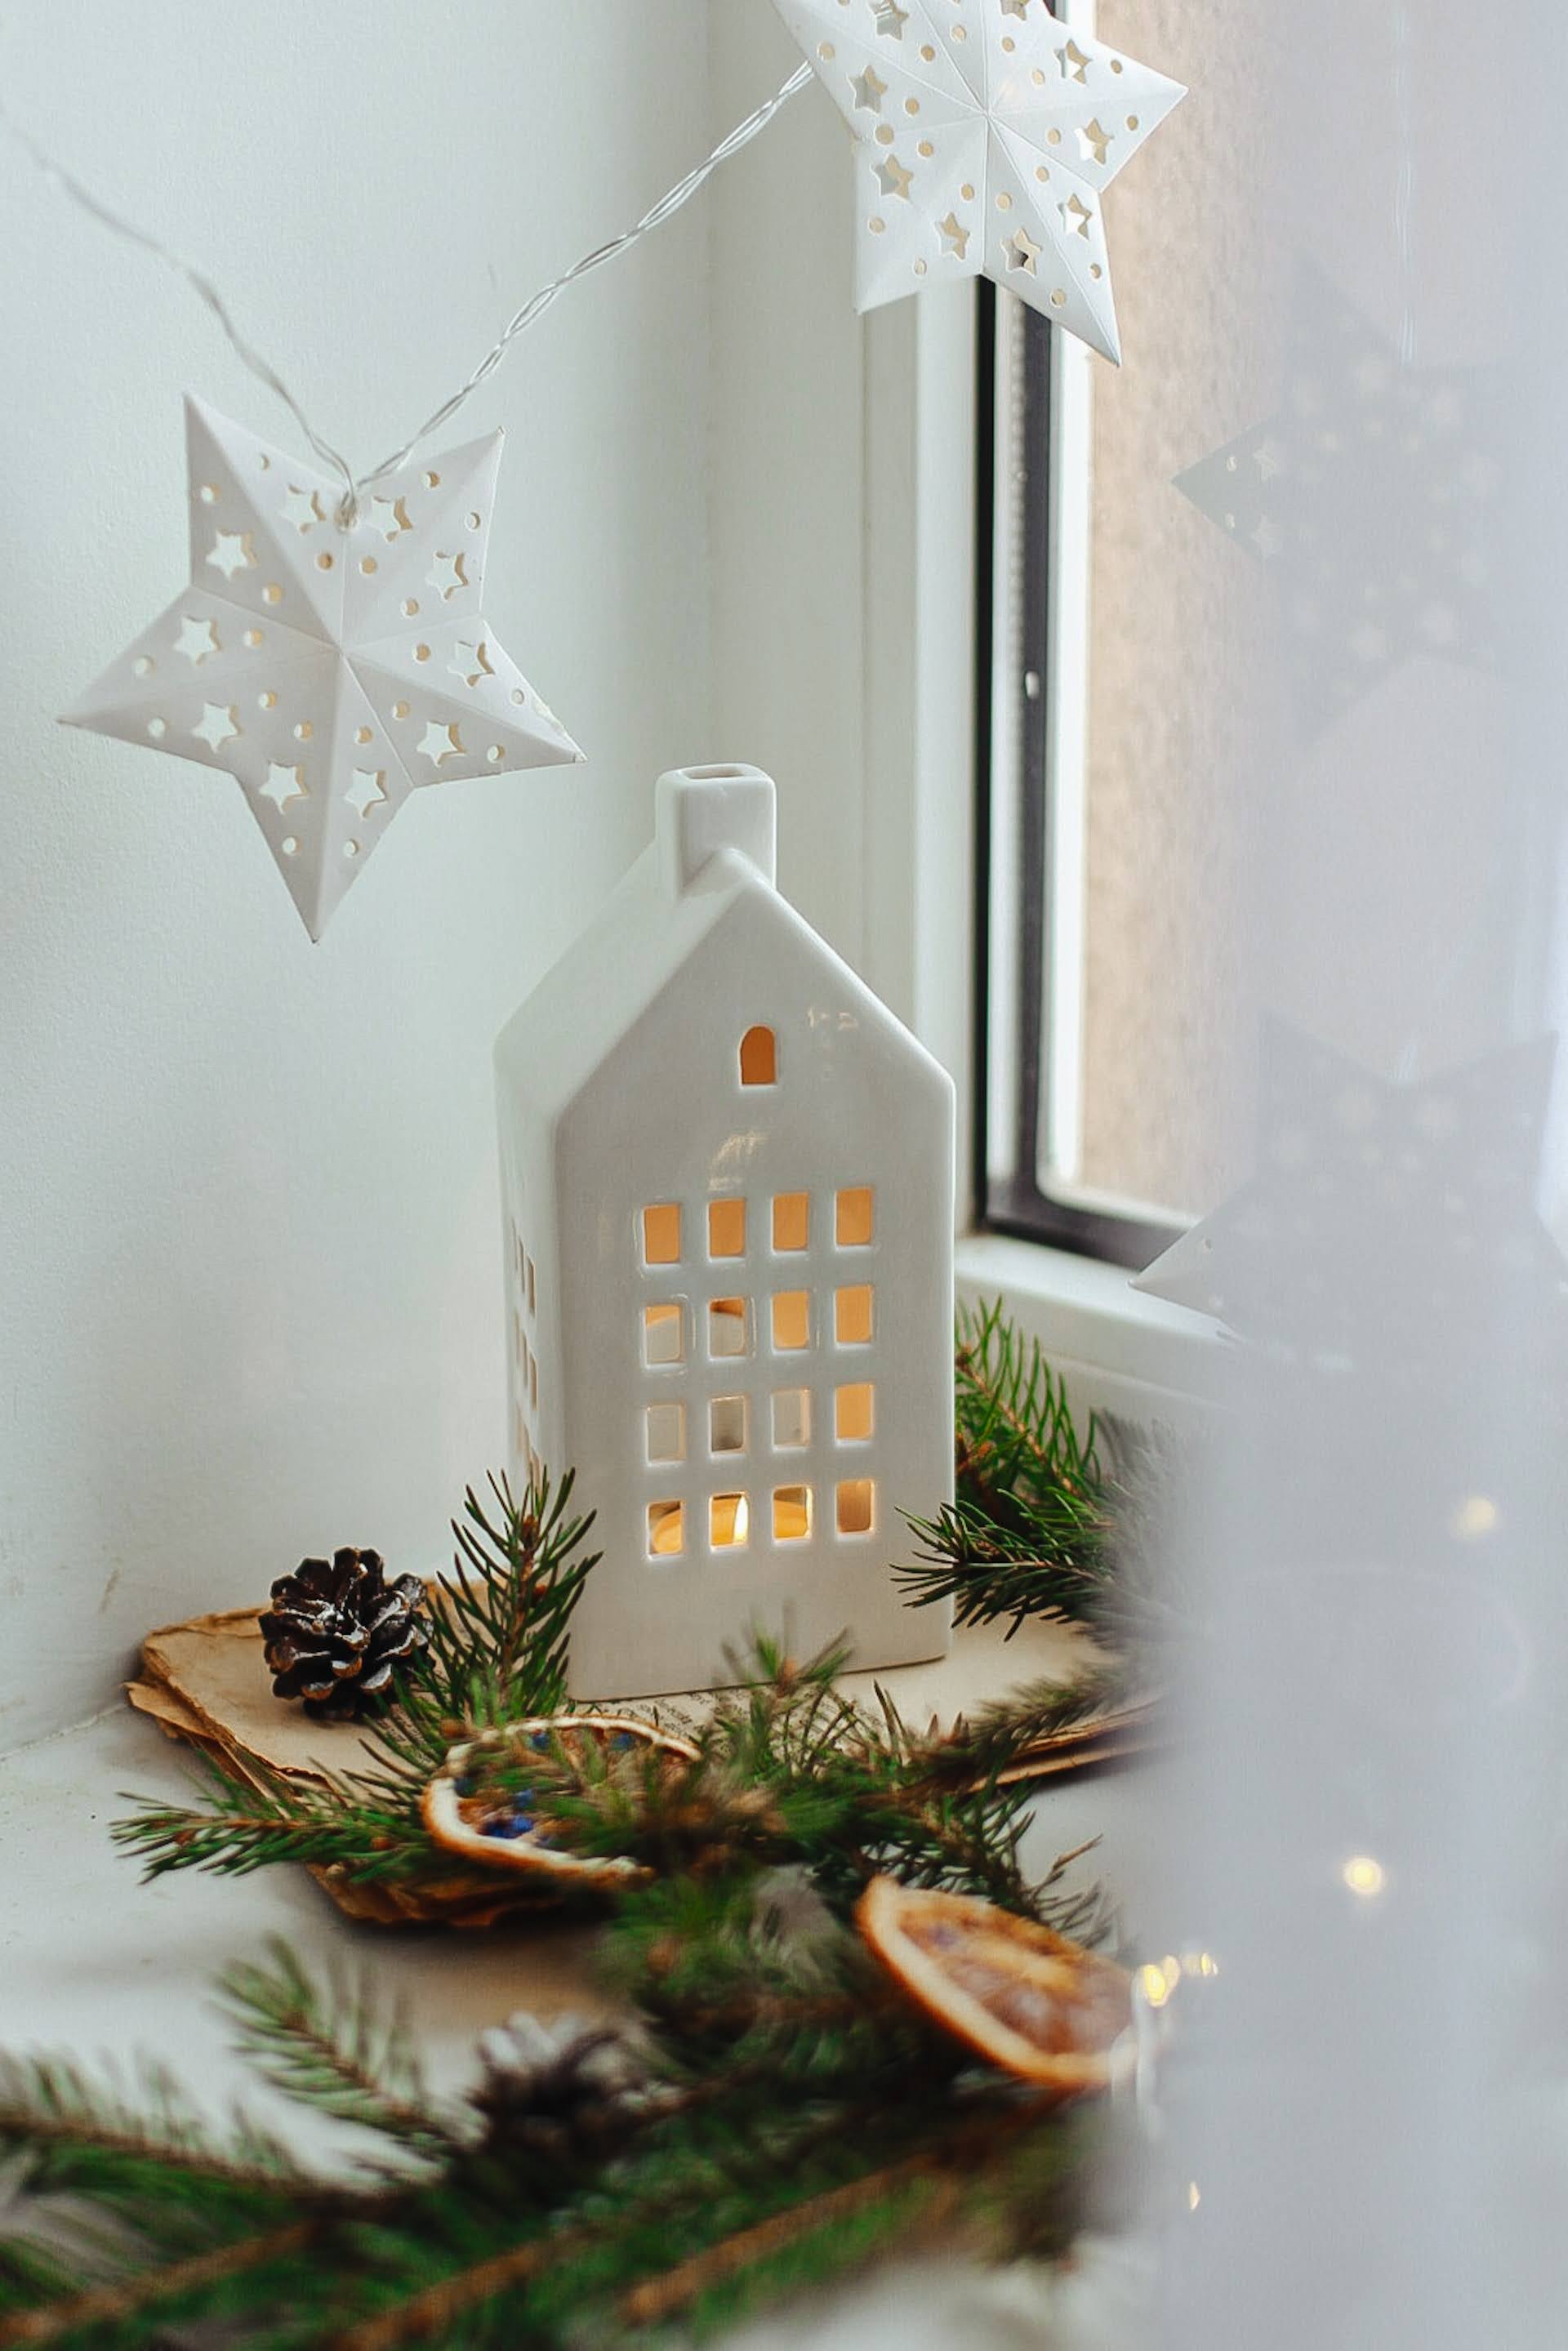 Fairy Lights and White Ceramic House | Photo by Olesia Hnatkevych via Unsplash